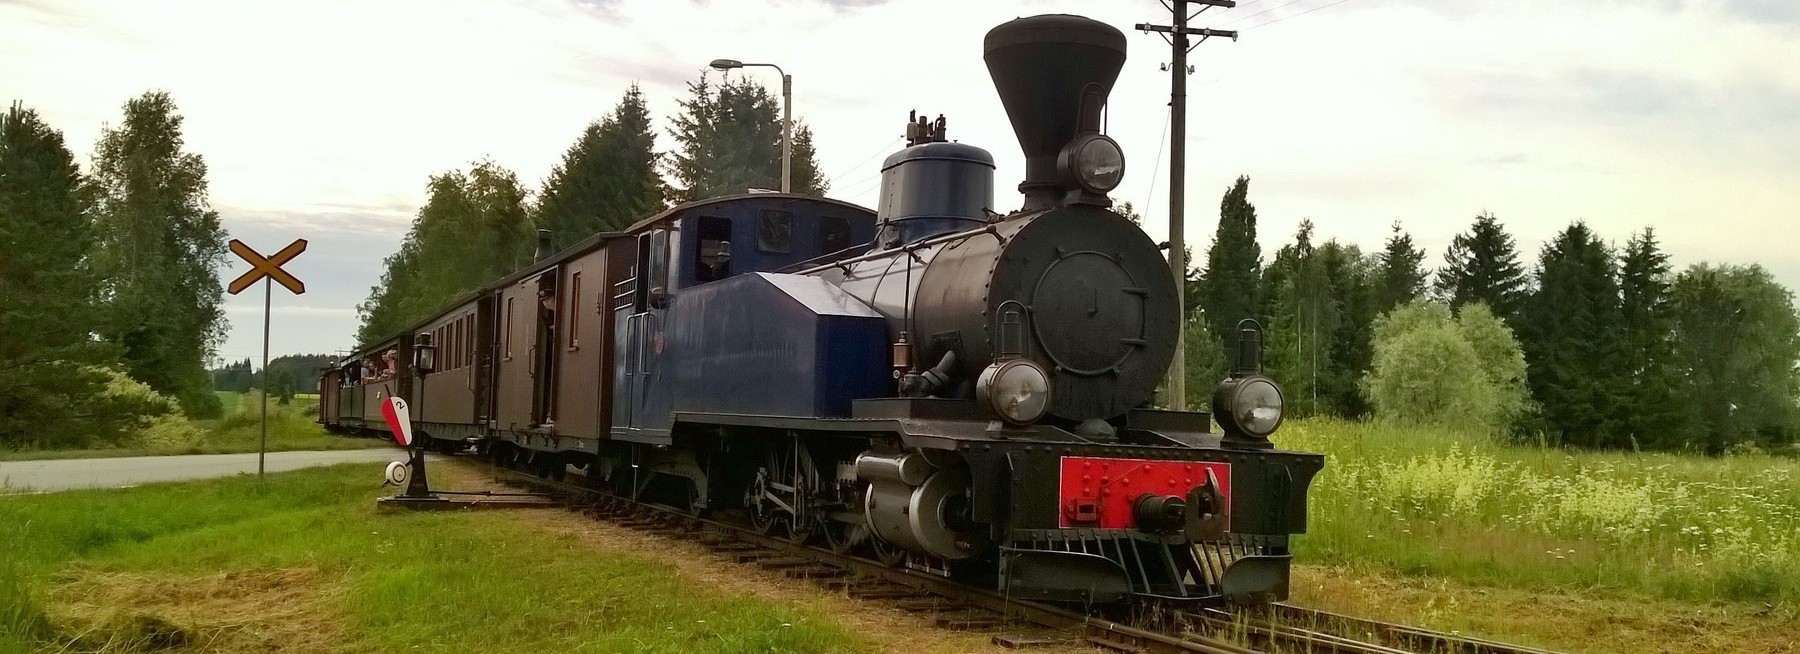 Kapearaiteinen museojuna liikennöi Jokioisten ja Humppilan välillä. Narrow gauge museum train operates in Jokioinen and Humppila.